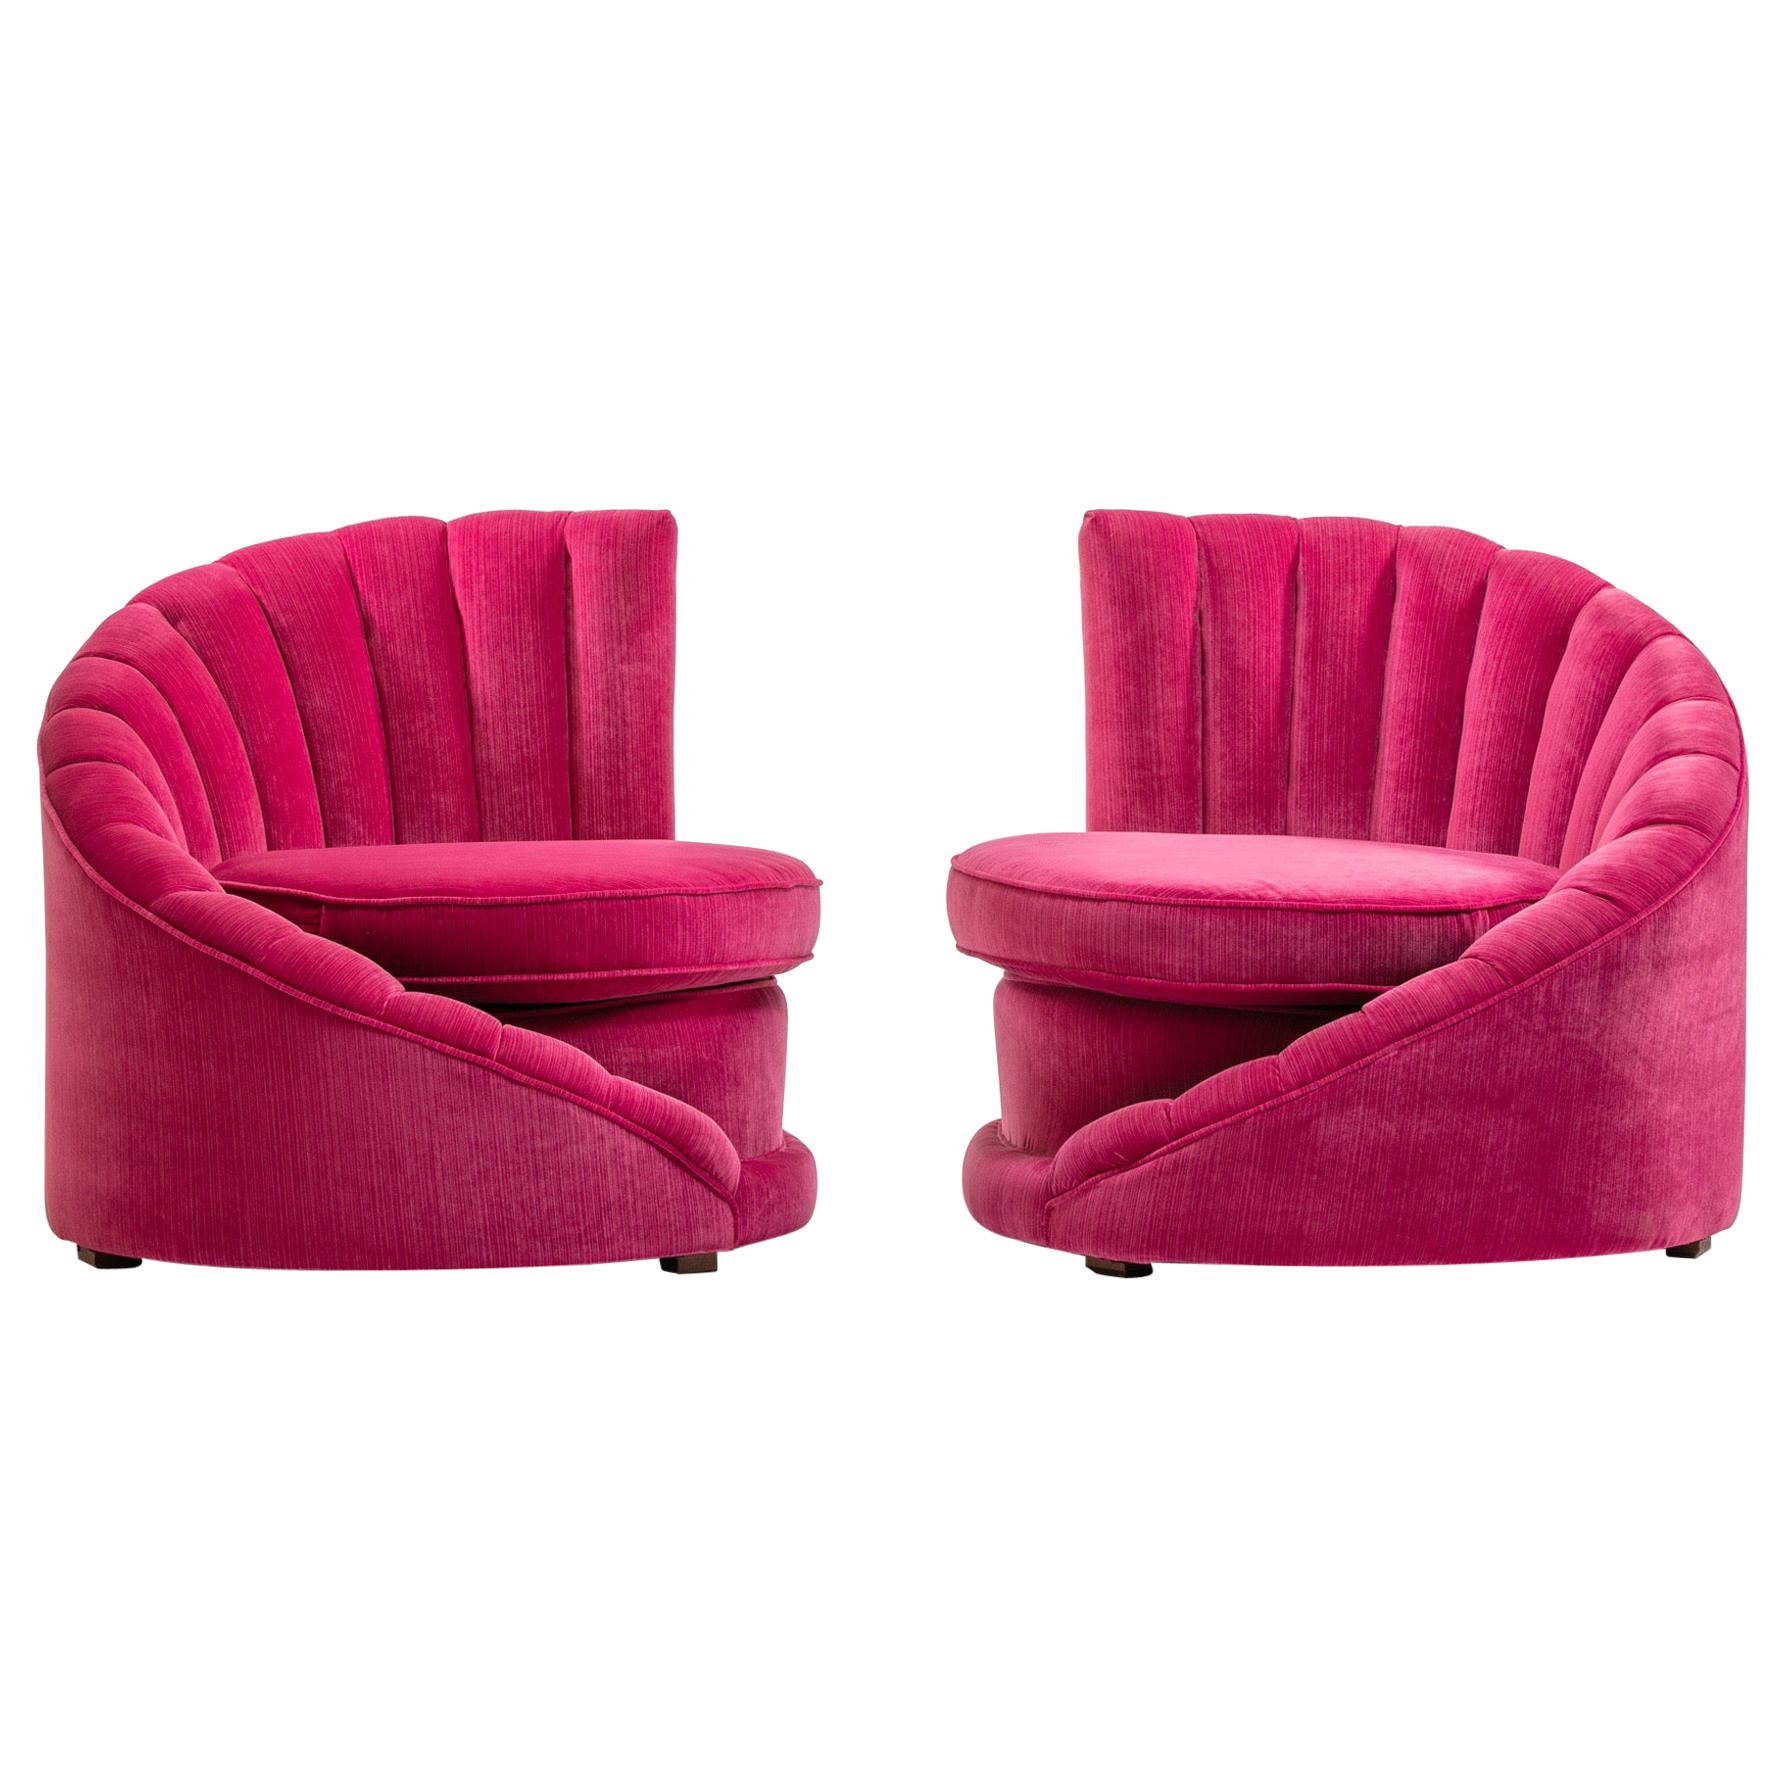 Pair of Hollywood Regency Asymmetrical Slipper Chairs in Hot Pink Strie Velvet